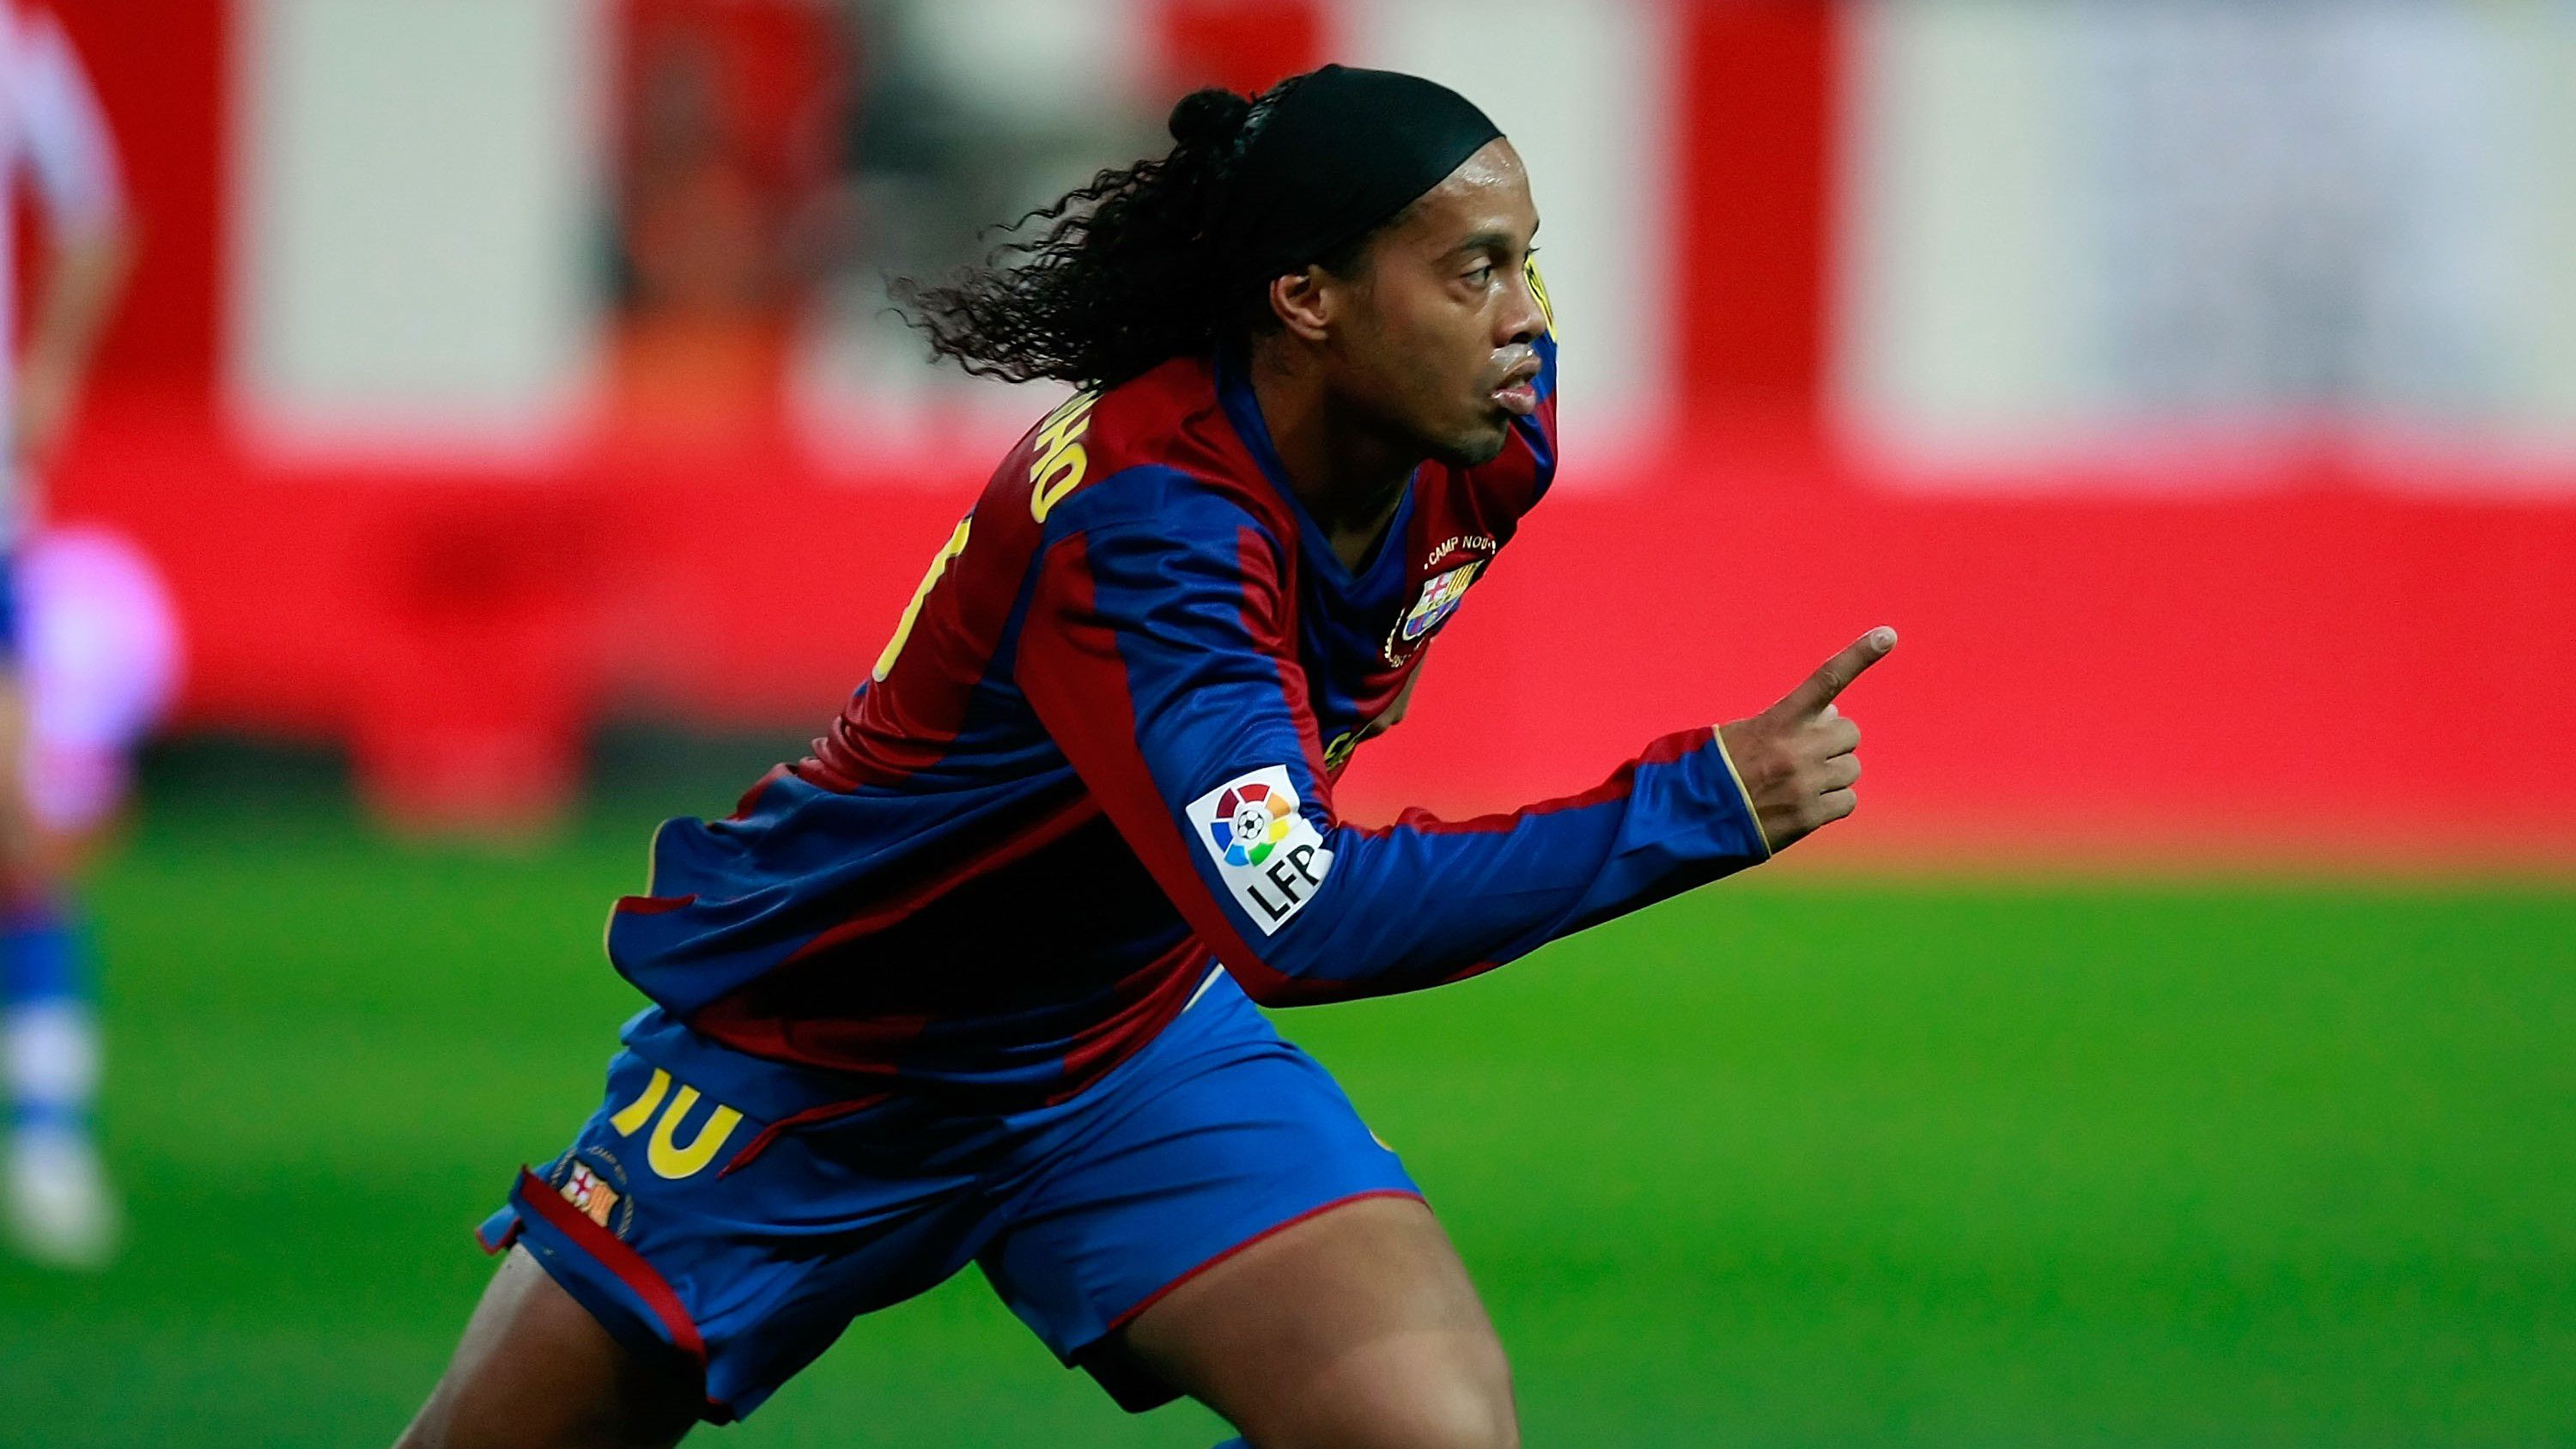 Fantasztikus ollózás: Ronaldinho 15 éve lőtte az utolsó gólját a Barcában – videóval